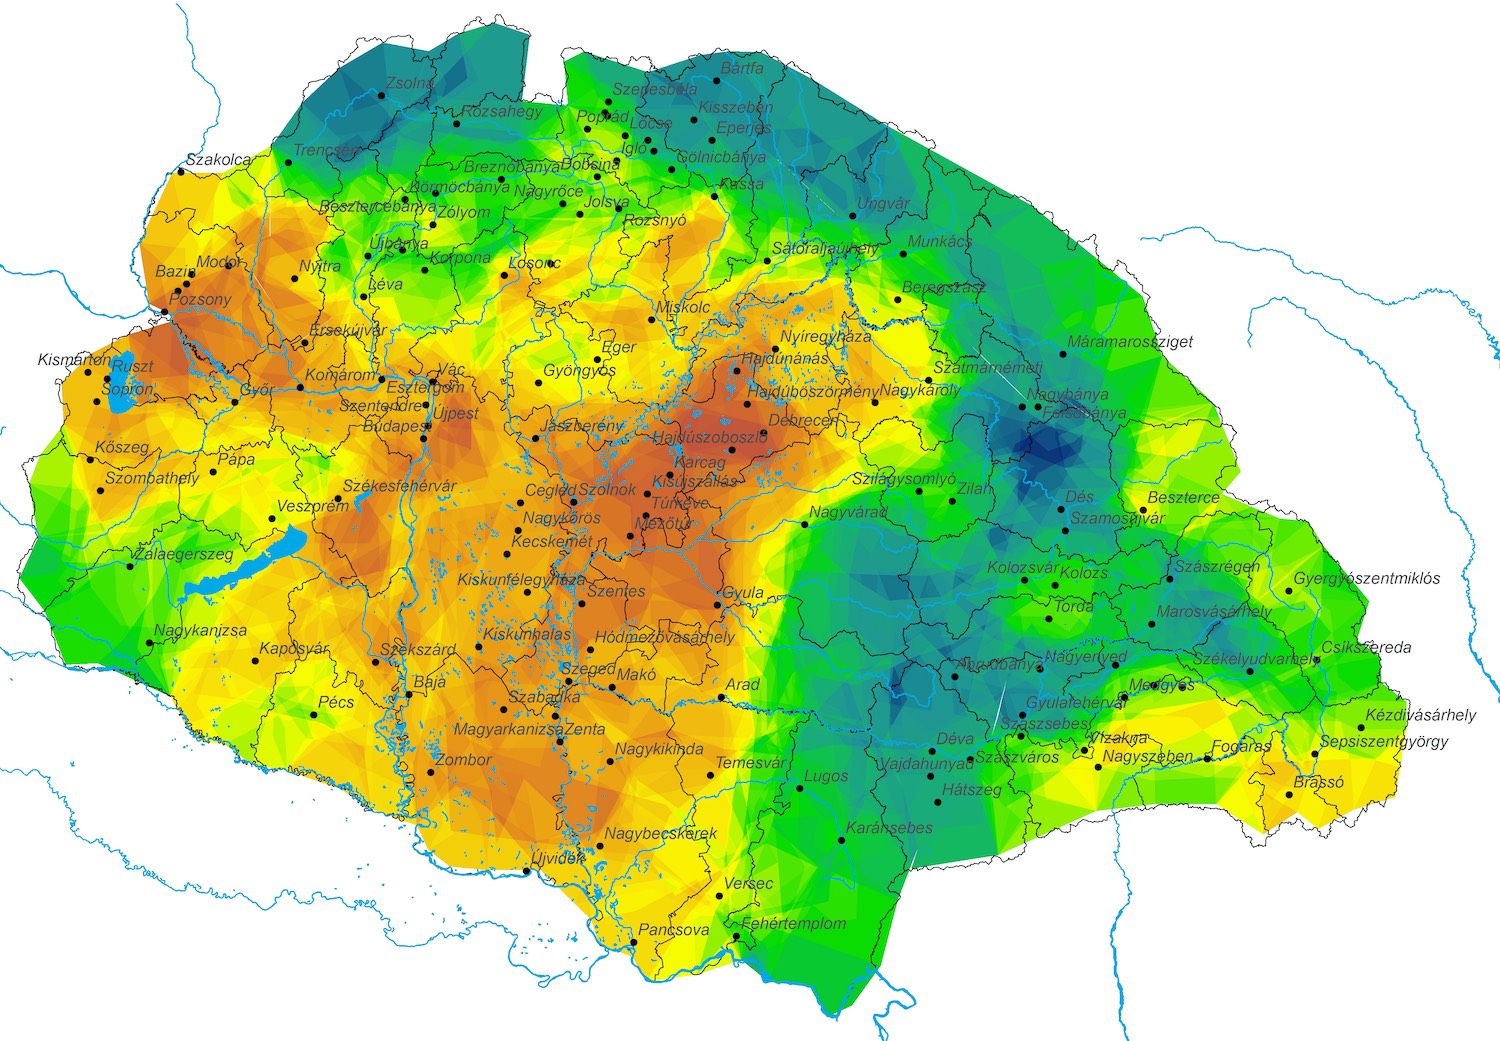 Területi egyenlőtlenségek Magyarországon 1910-ben: minél vörösebb egy terület, annál fejlettebb és minél fejletlenebb, annál kékebb l Fotó: Válasz Online/ GISta Hungarorum/Demeter Gábor